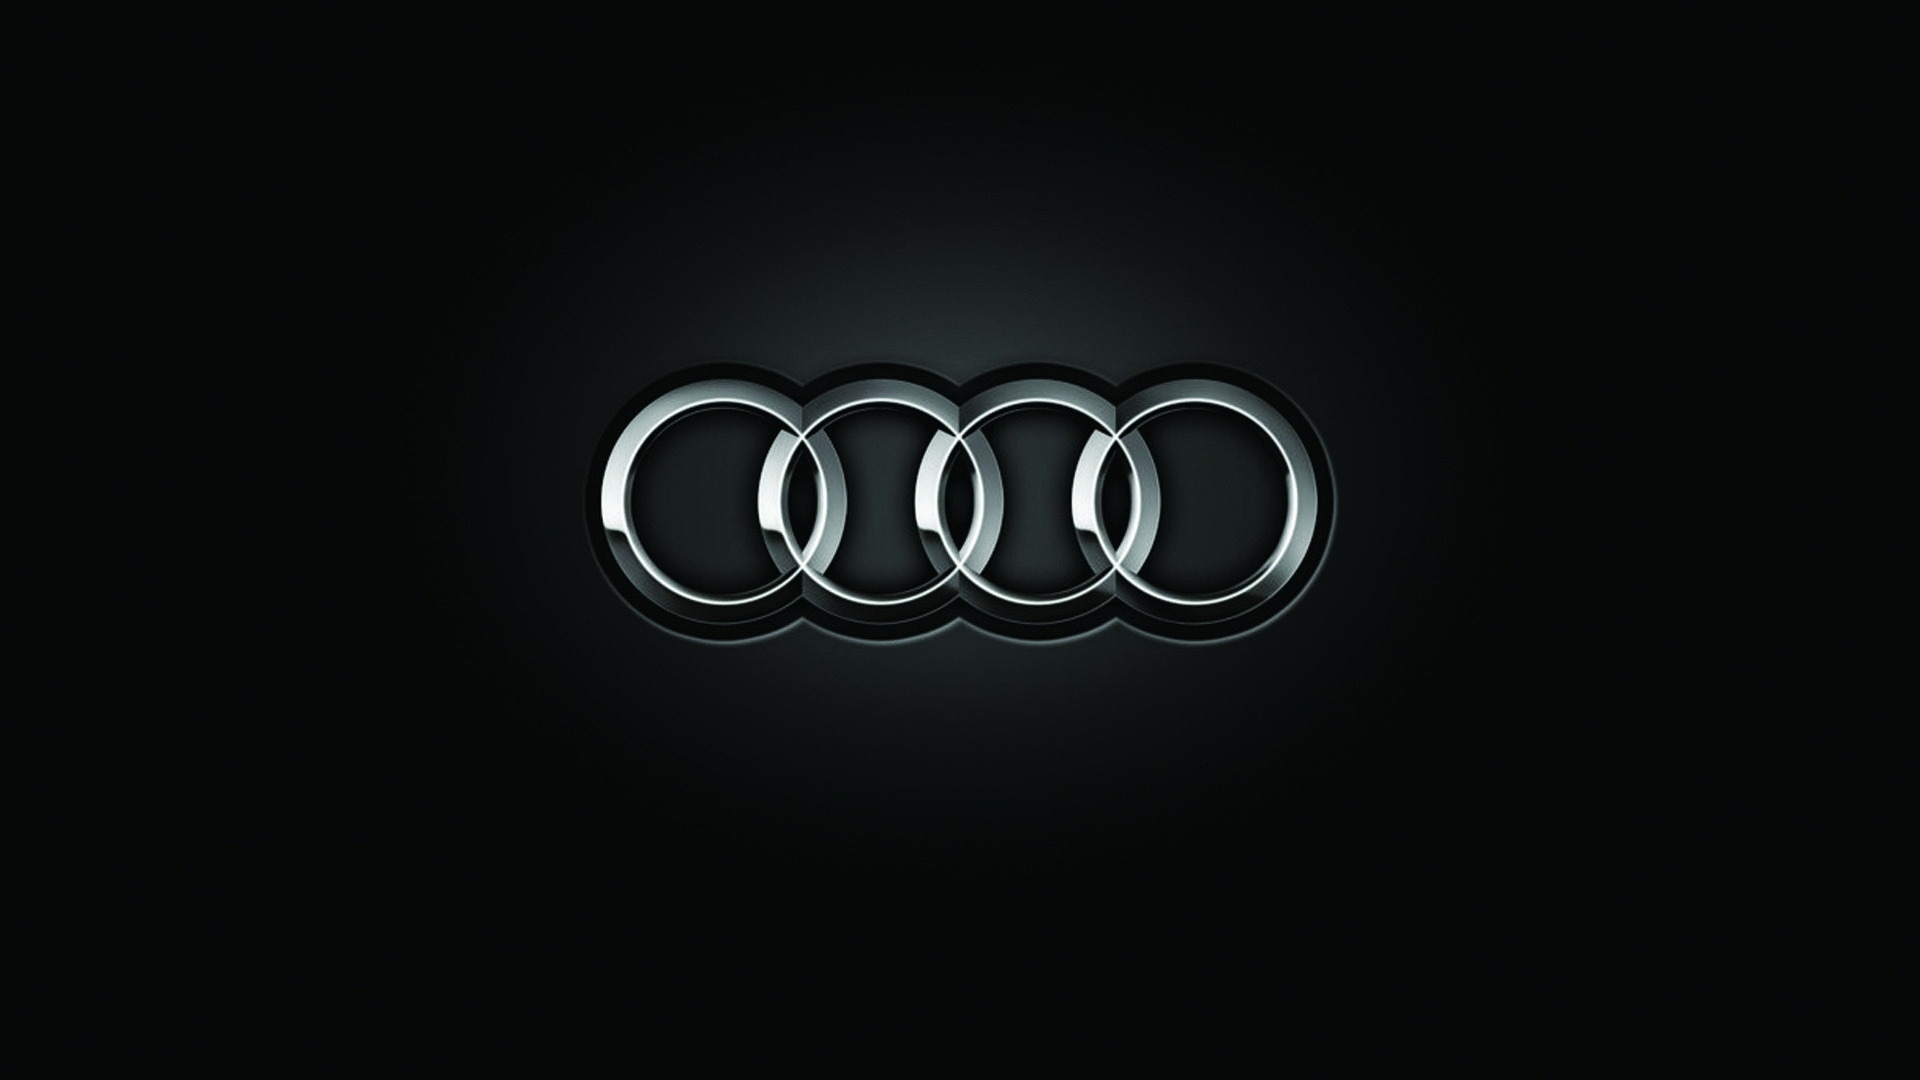 Biểu tượng xe Audi và những ý nghĩa xung quanh biểu tượng này